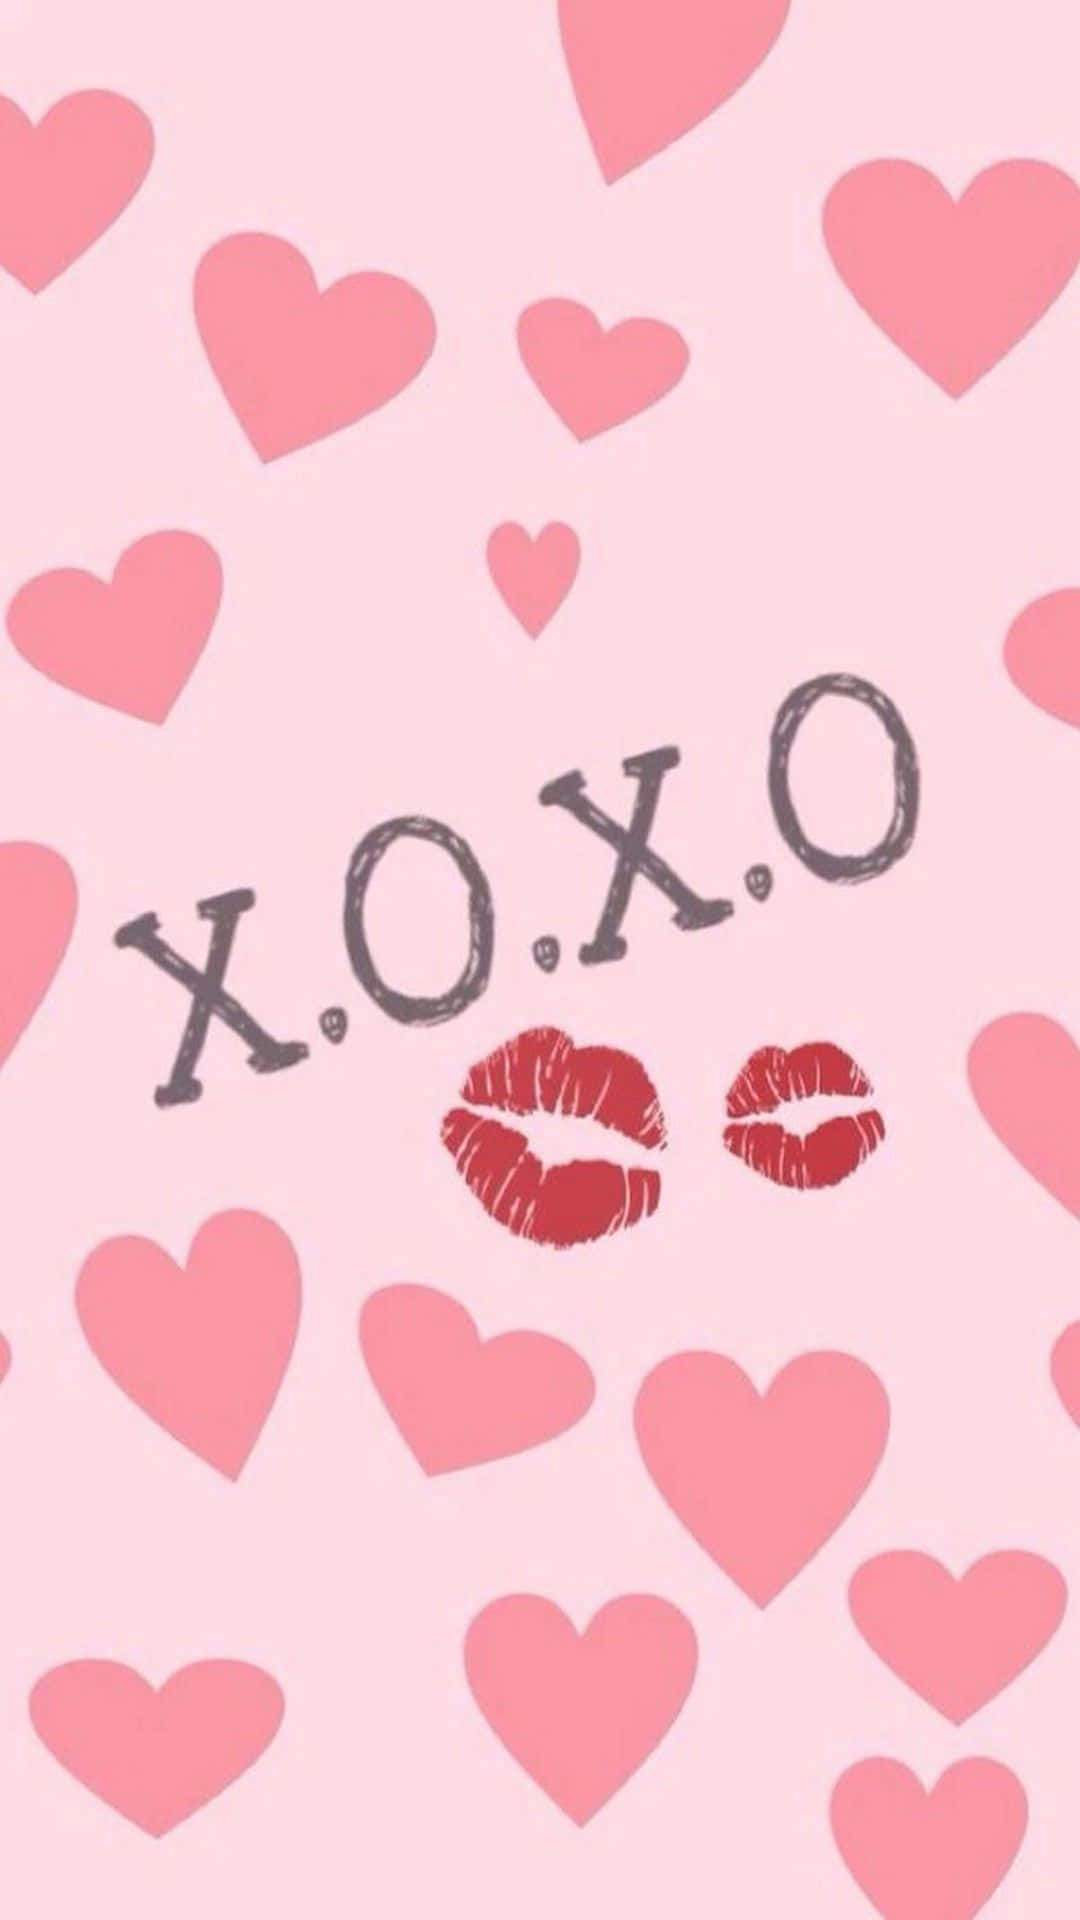 Valentine's Day Phone Xoxo Kiss Wallpaper